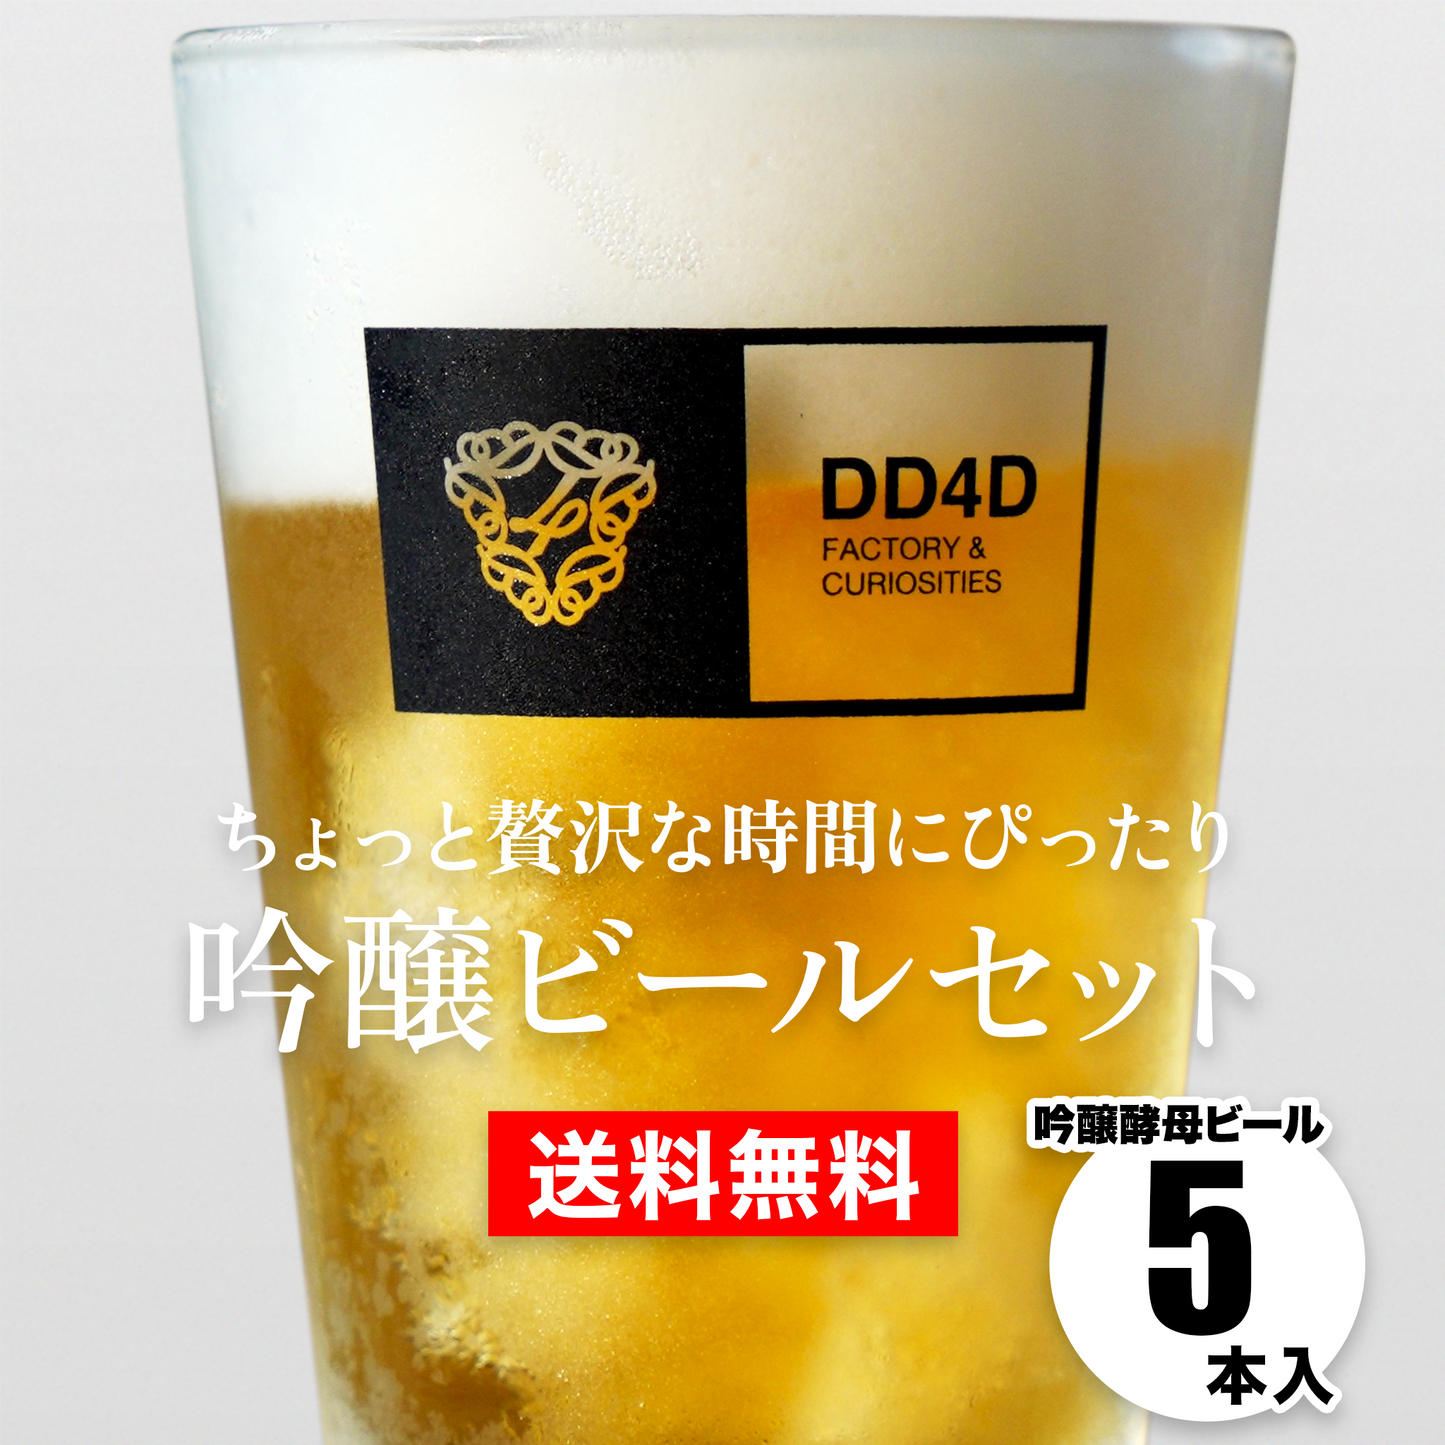 吟醸ビールセット5本入り (送料無料) 10月03日リニューアル